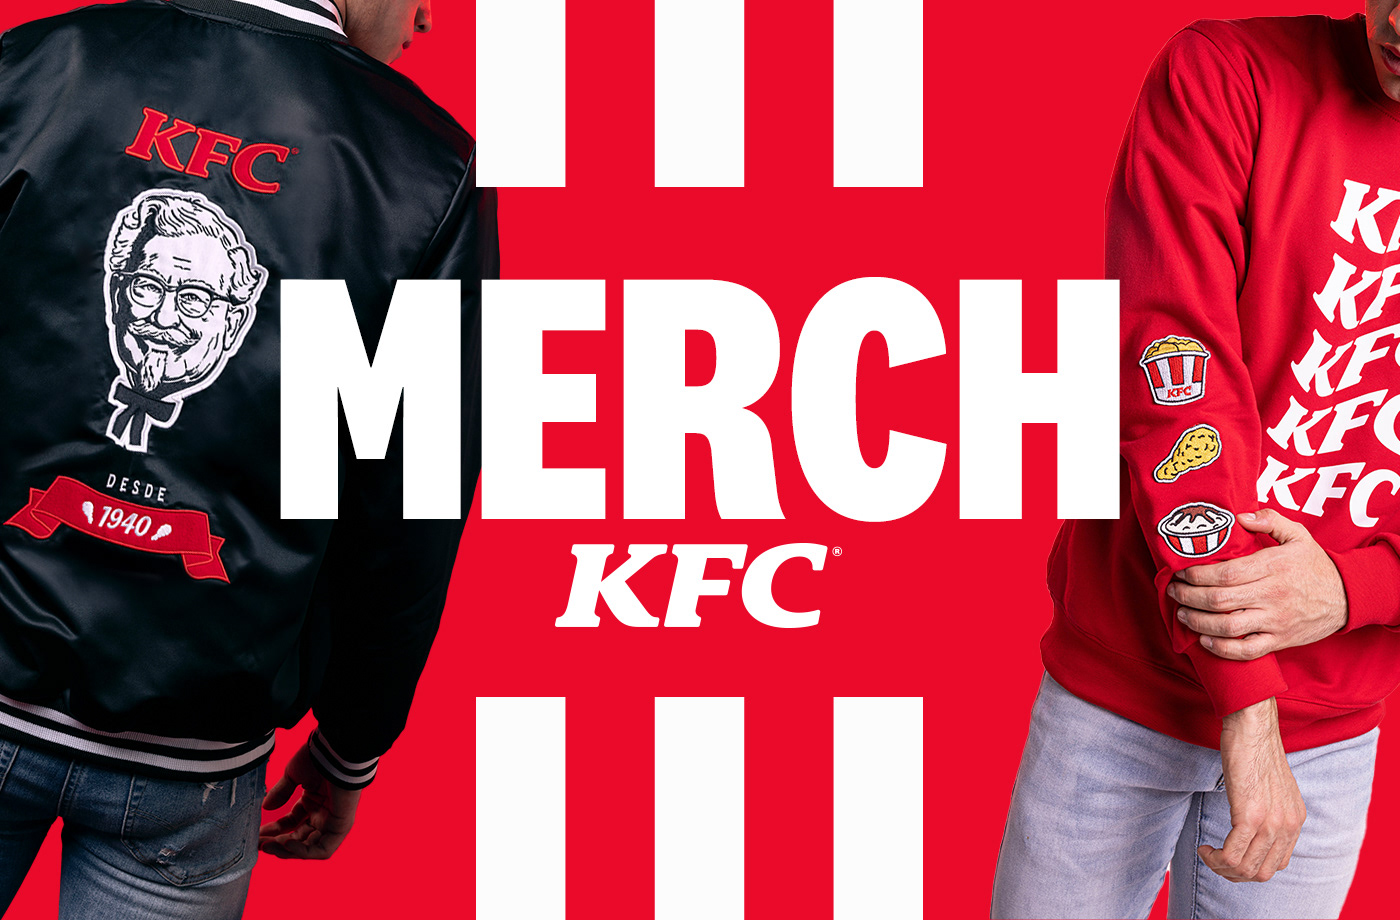 design merchandise Clothing Style KFC Mexico KFC brand identity photoshoot